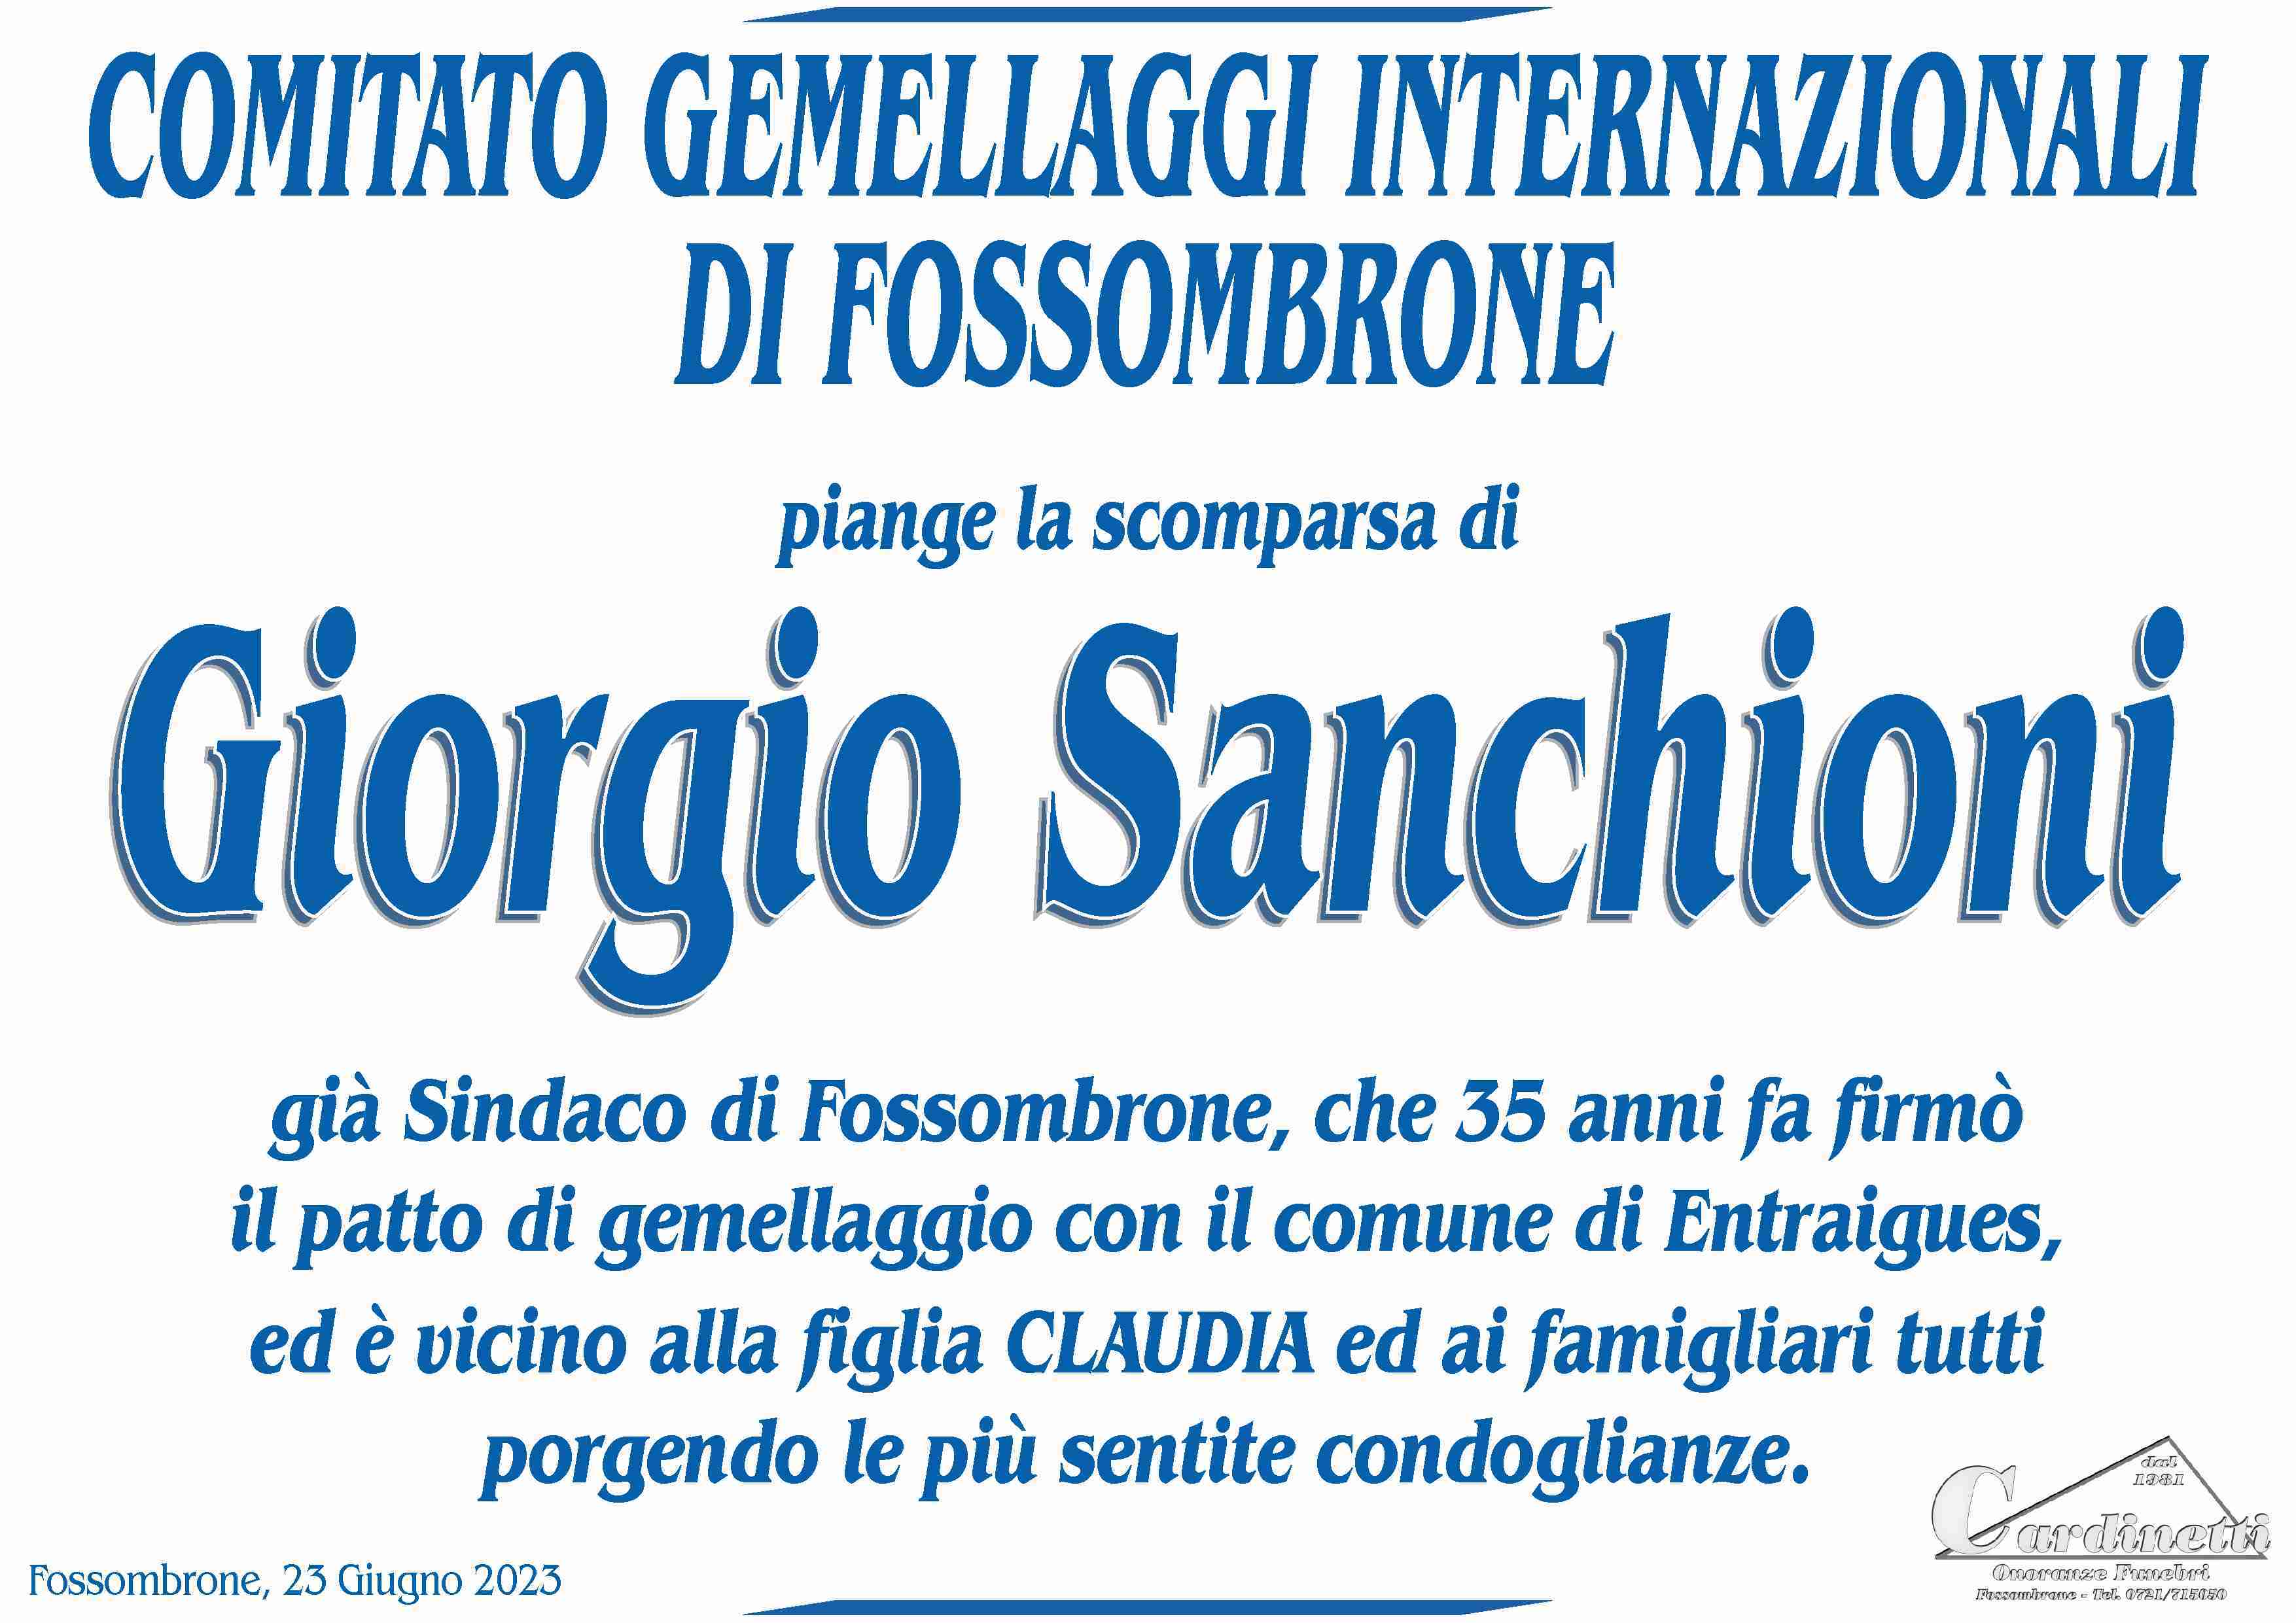 Giorgio Sanchioni